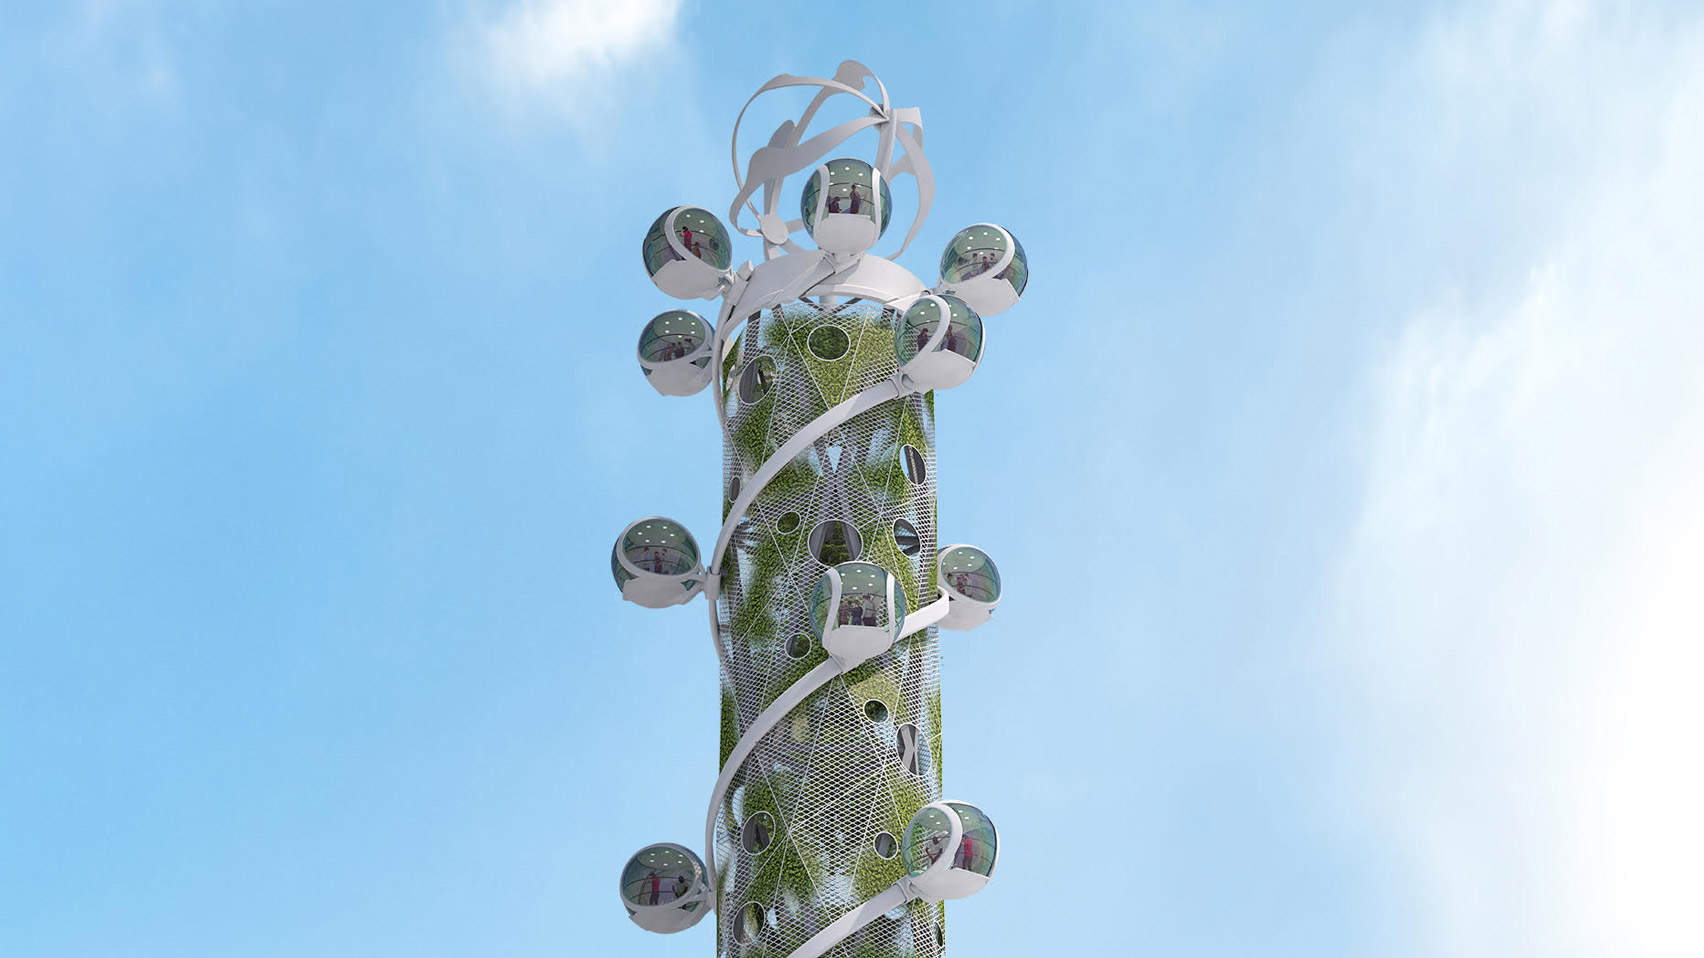 세계 최초 “기후중립적 고공 놀이기구” 컨셉, 스파이럴 타워